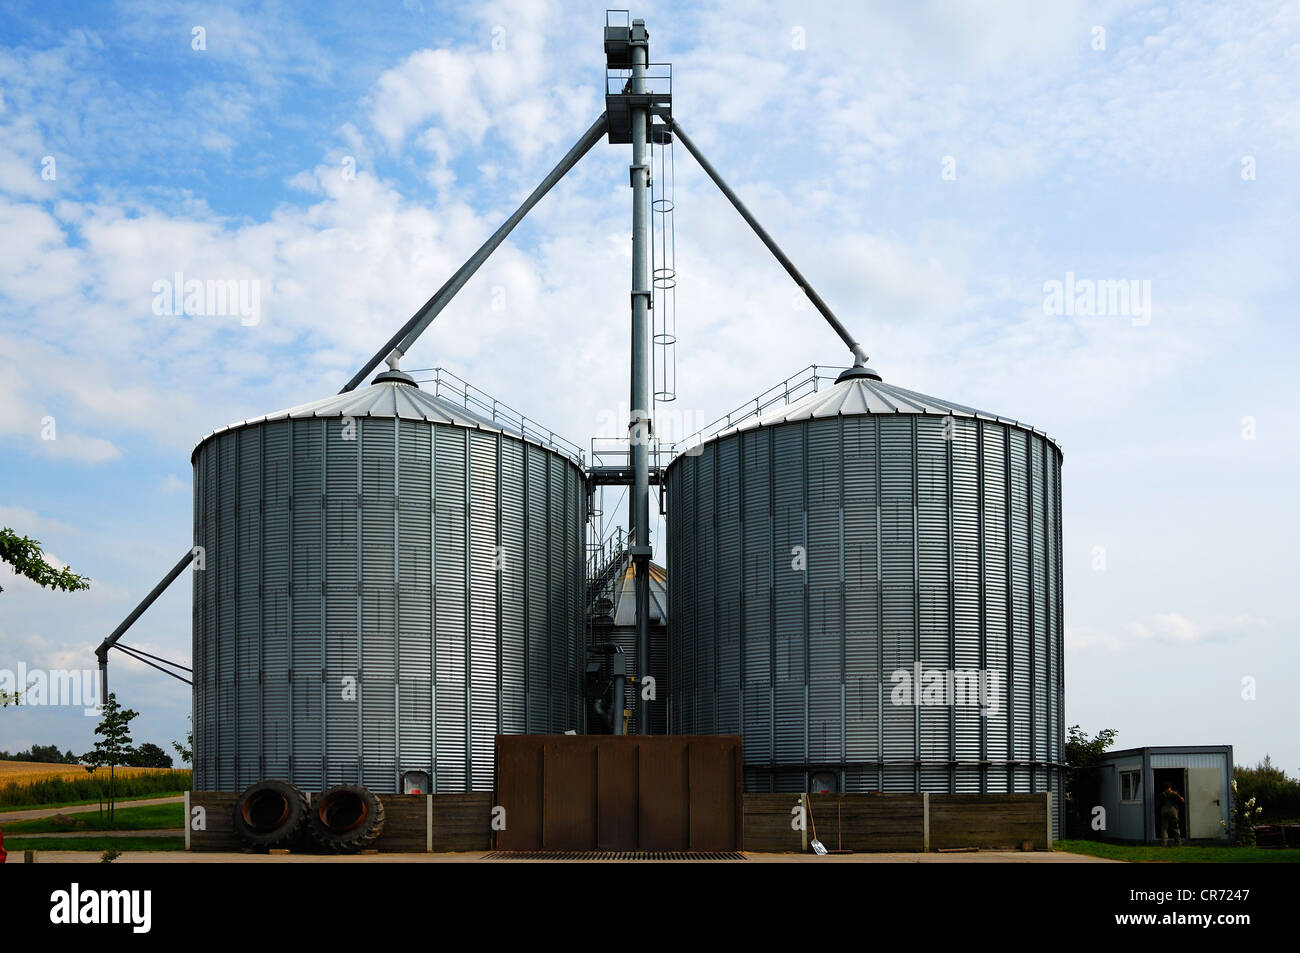 Dos enormes silos de grano, capacidad de alrededor de 1000 toneladas, el Estado federado de Mecklemburgo-Pomerania Occidental, Alemania, Europa Foto de stock